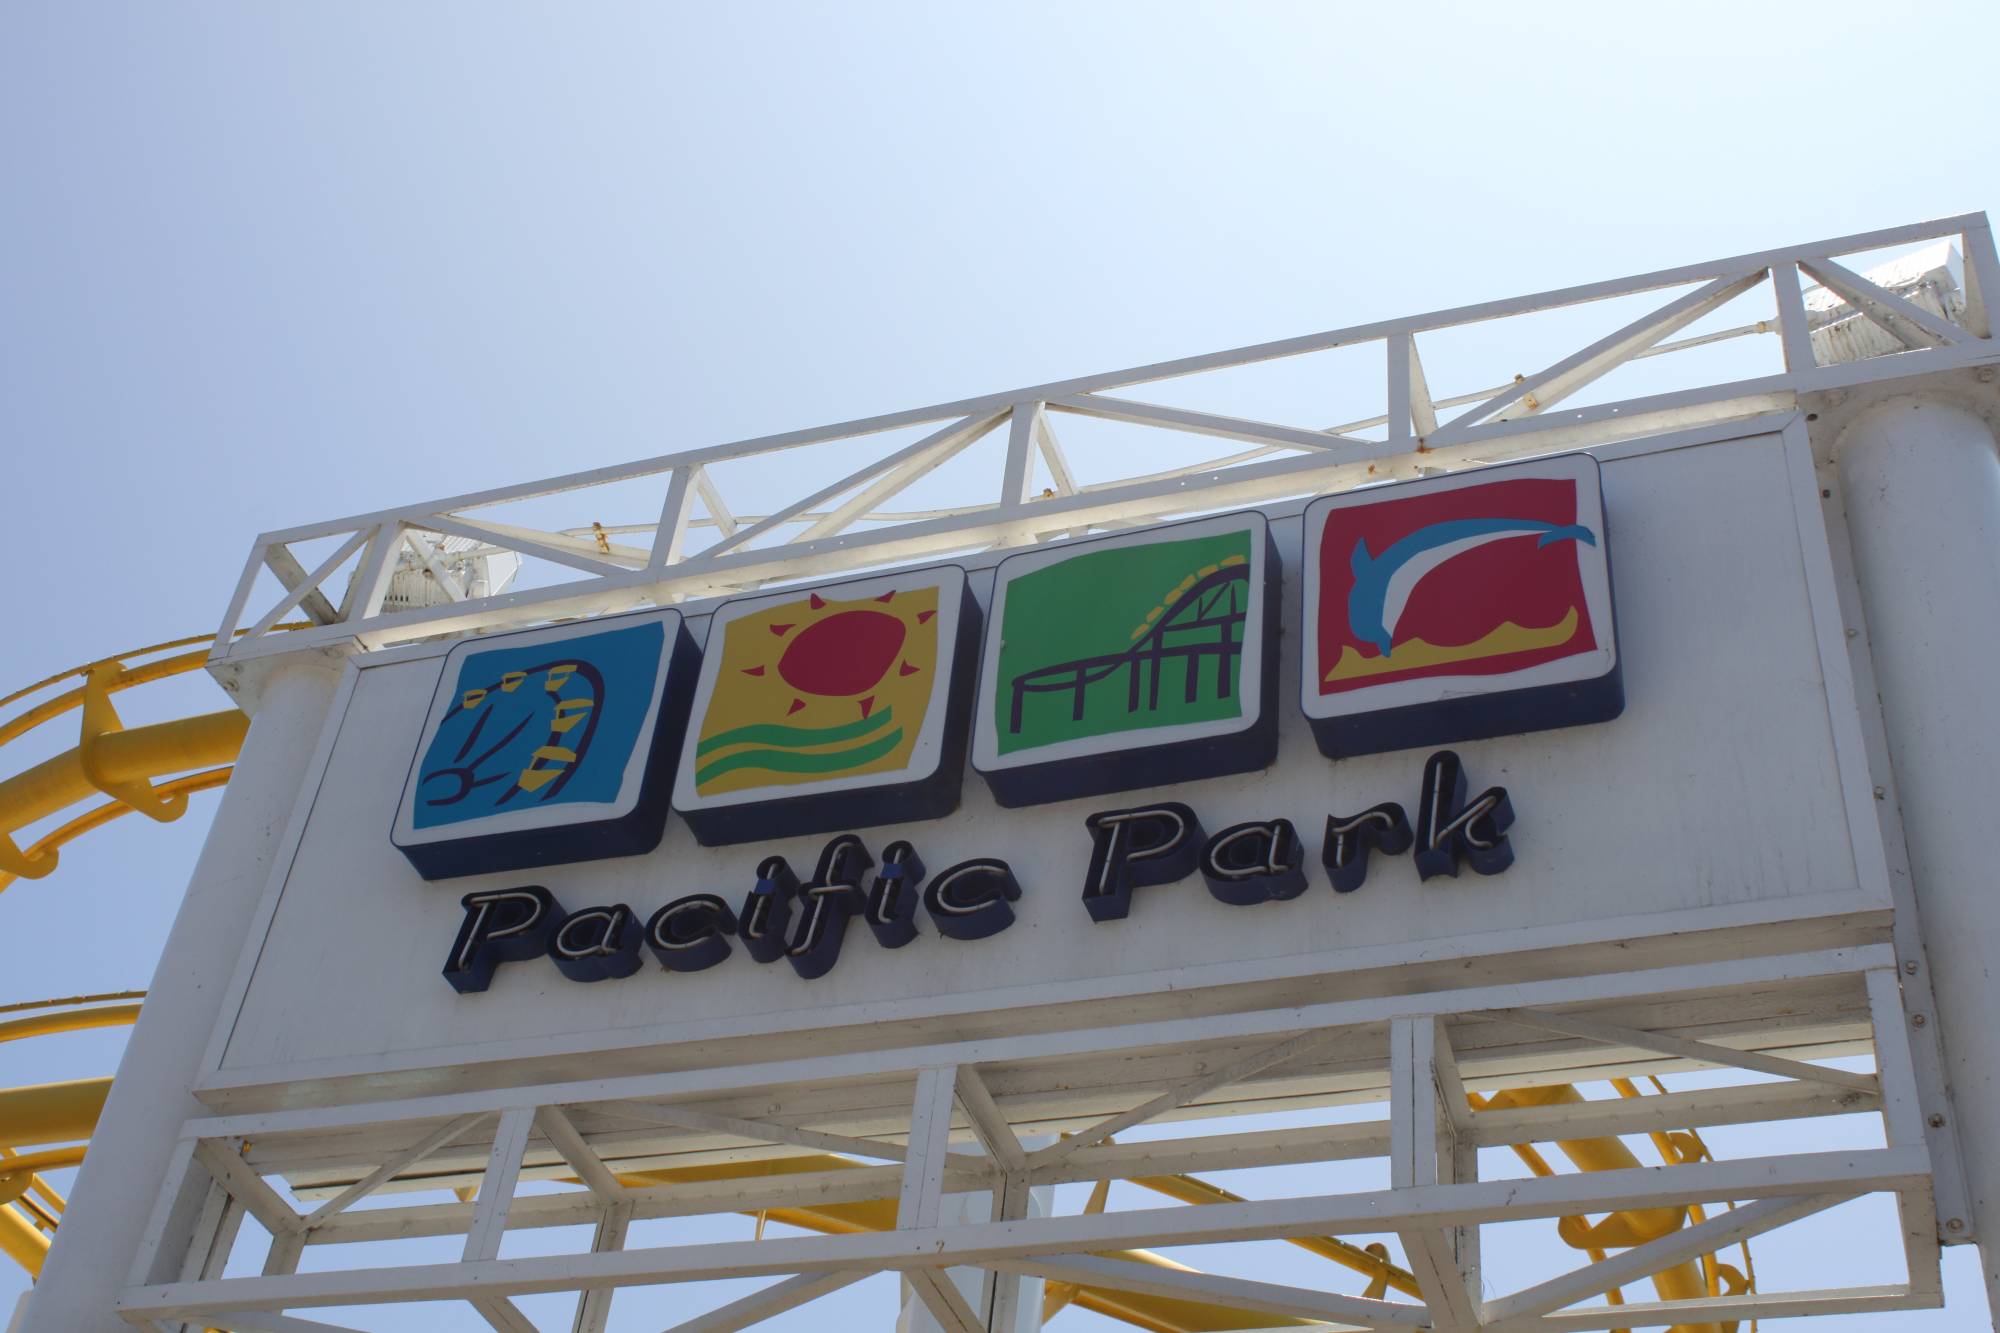 Santa Monica Pier - Pacific Park entrance sign